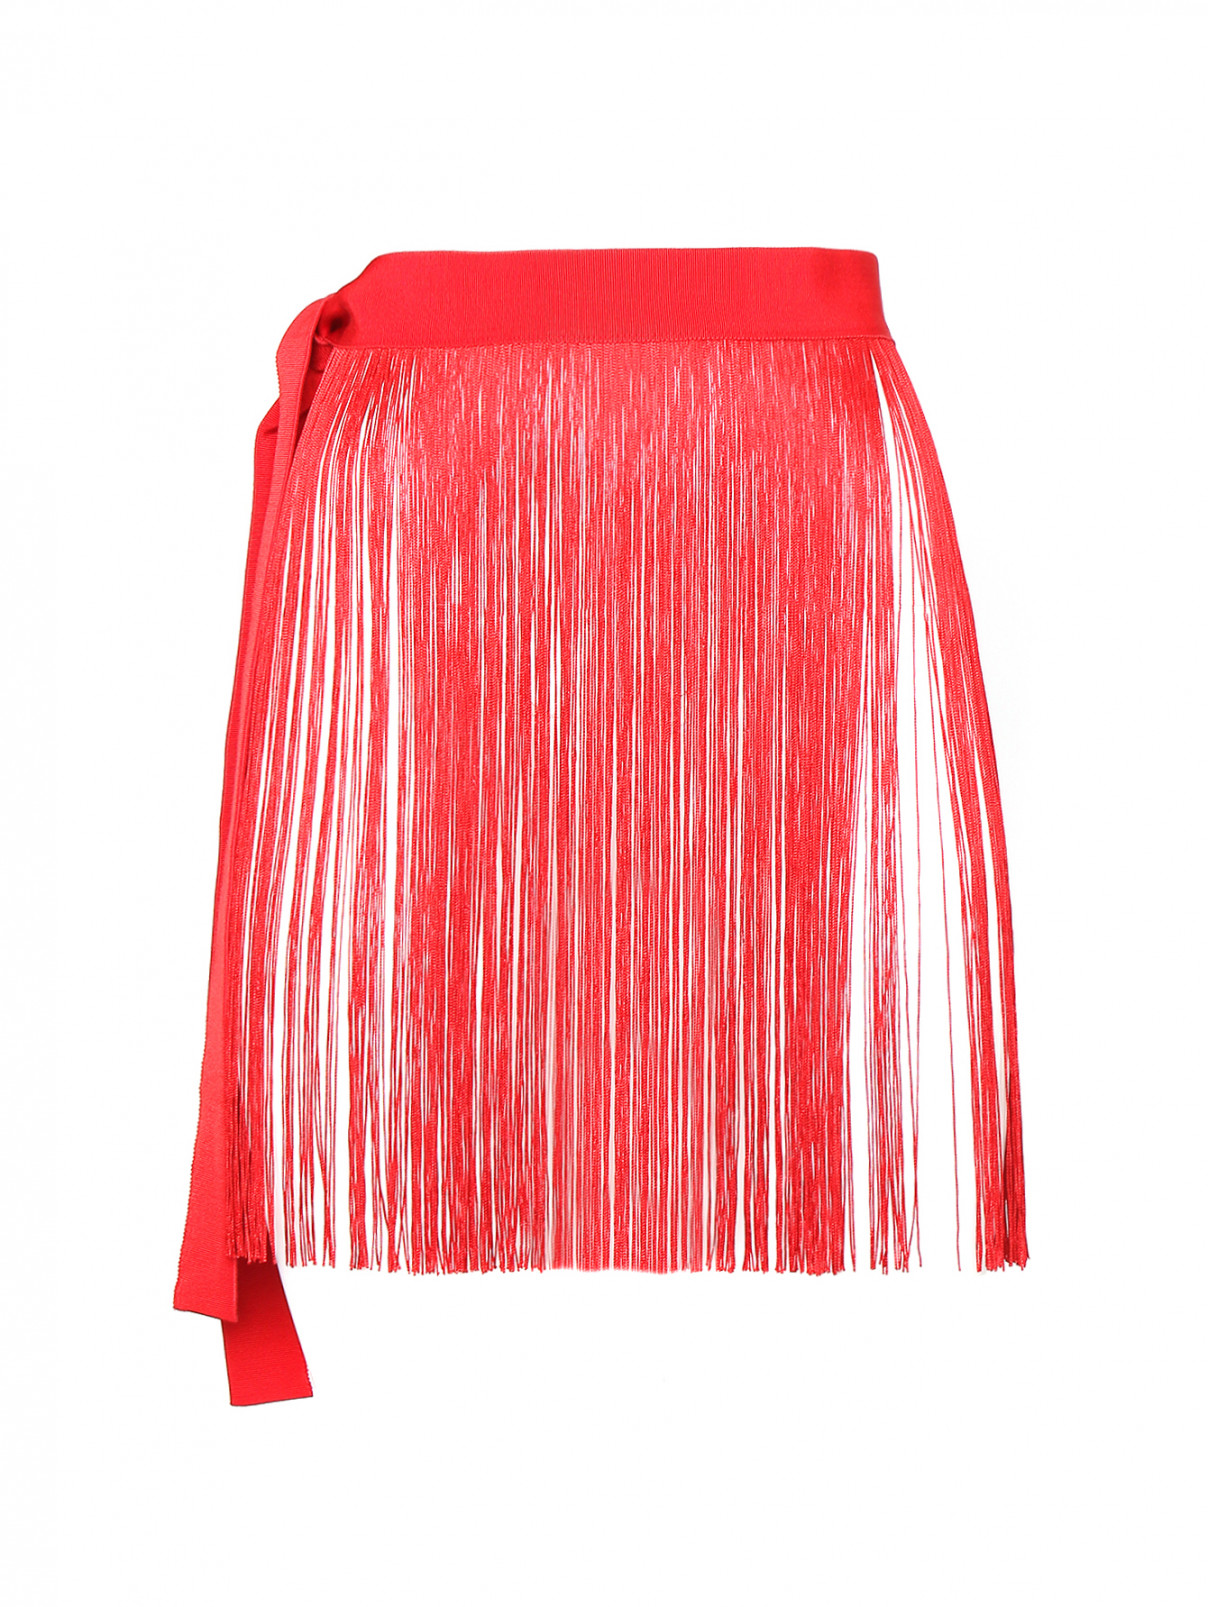 Пояс из хлопка и вискозы с бахромой Marina Rinaldi  –  Общий вид  – Цвет:  Красный